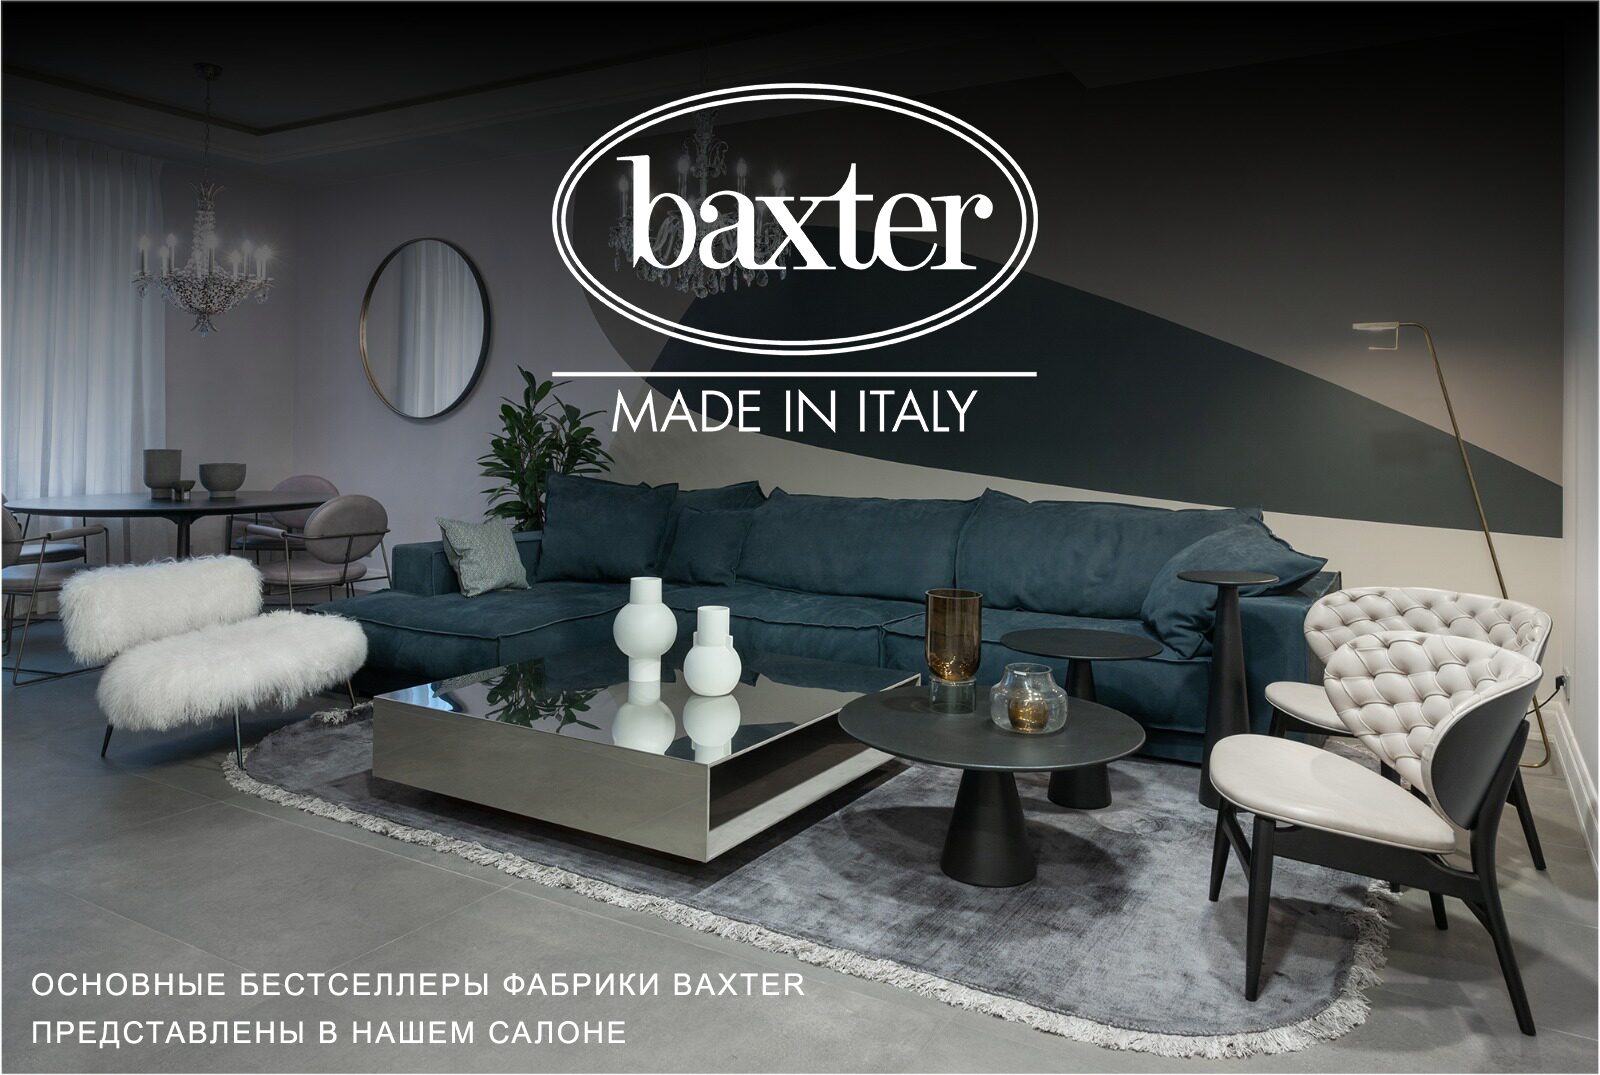 Baxter мебель